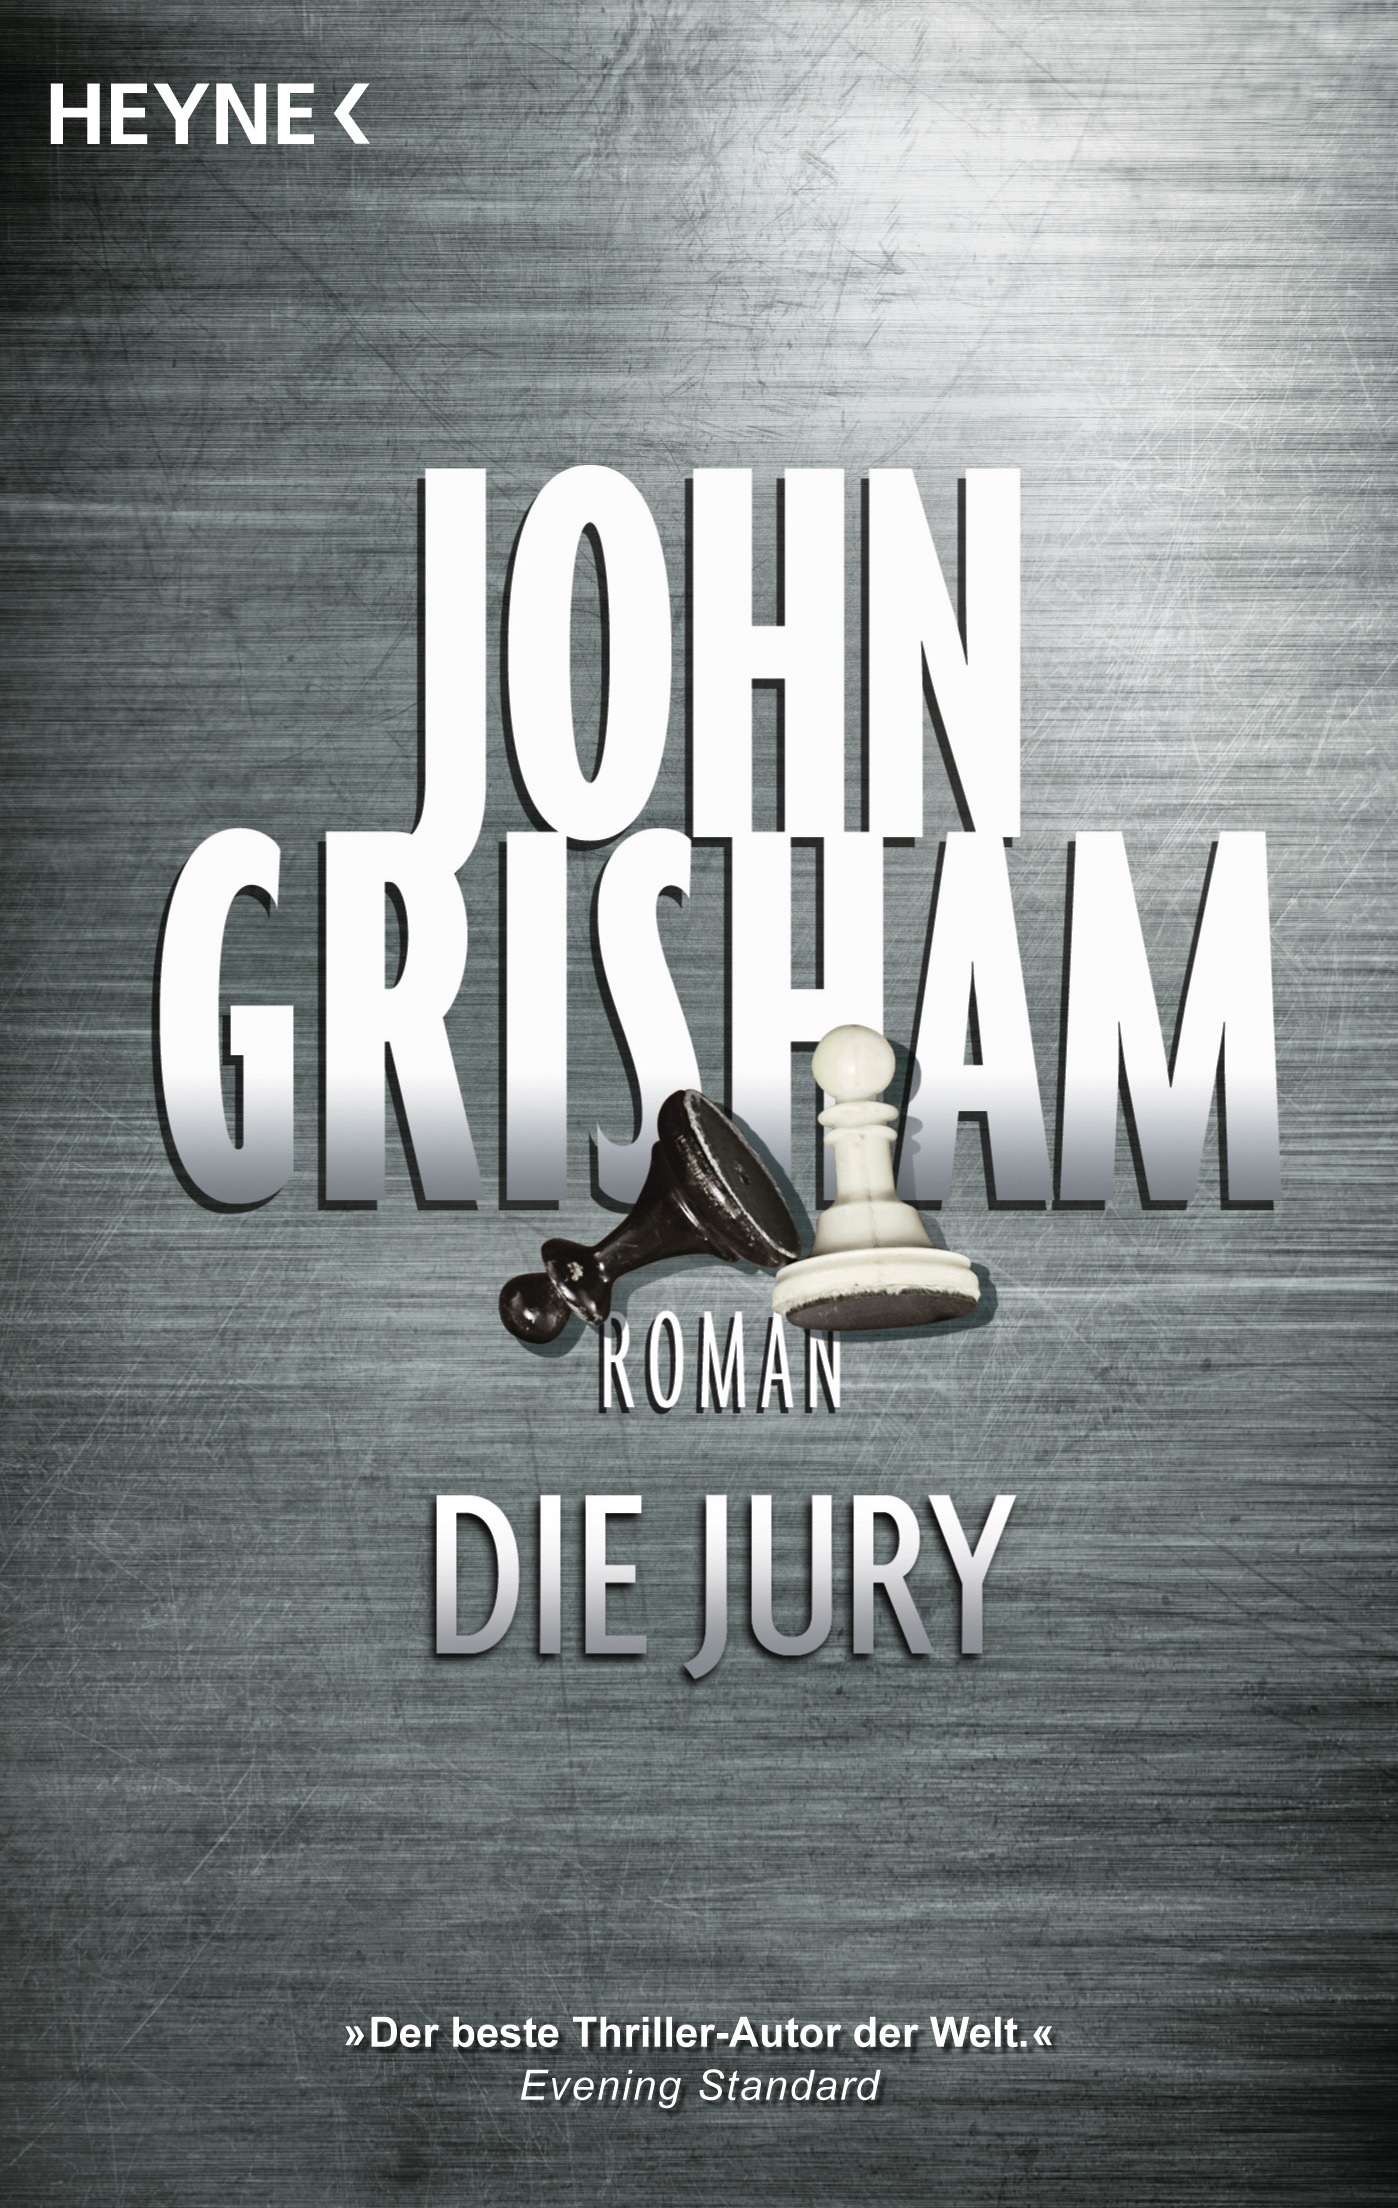 Cover von "Die Jury" von John Grisham